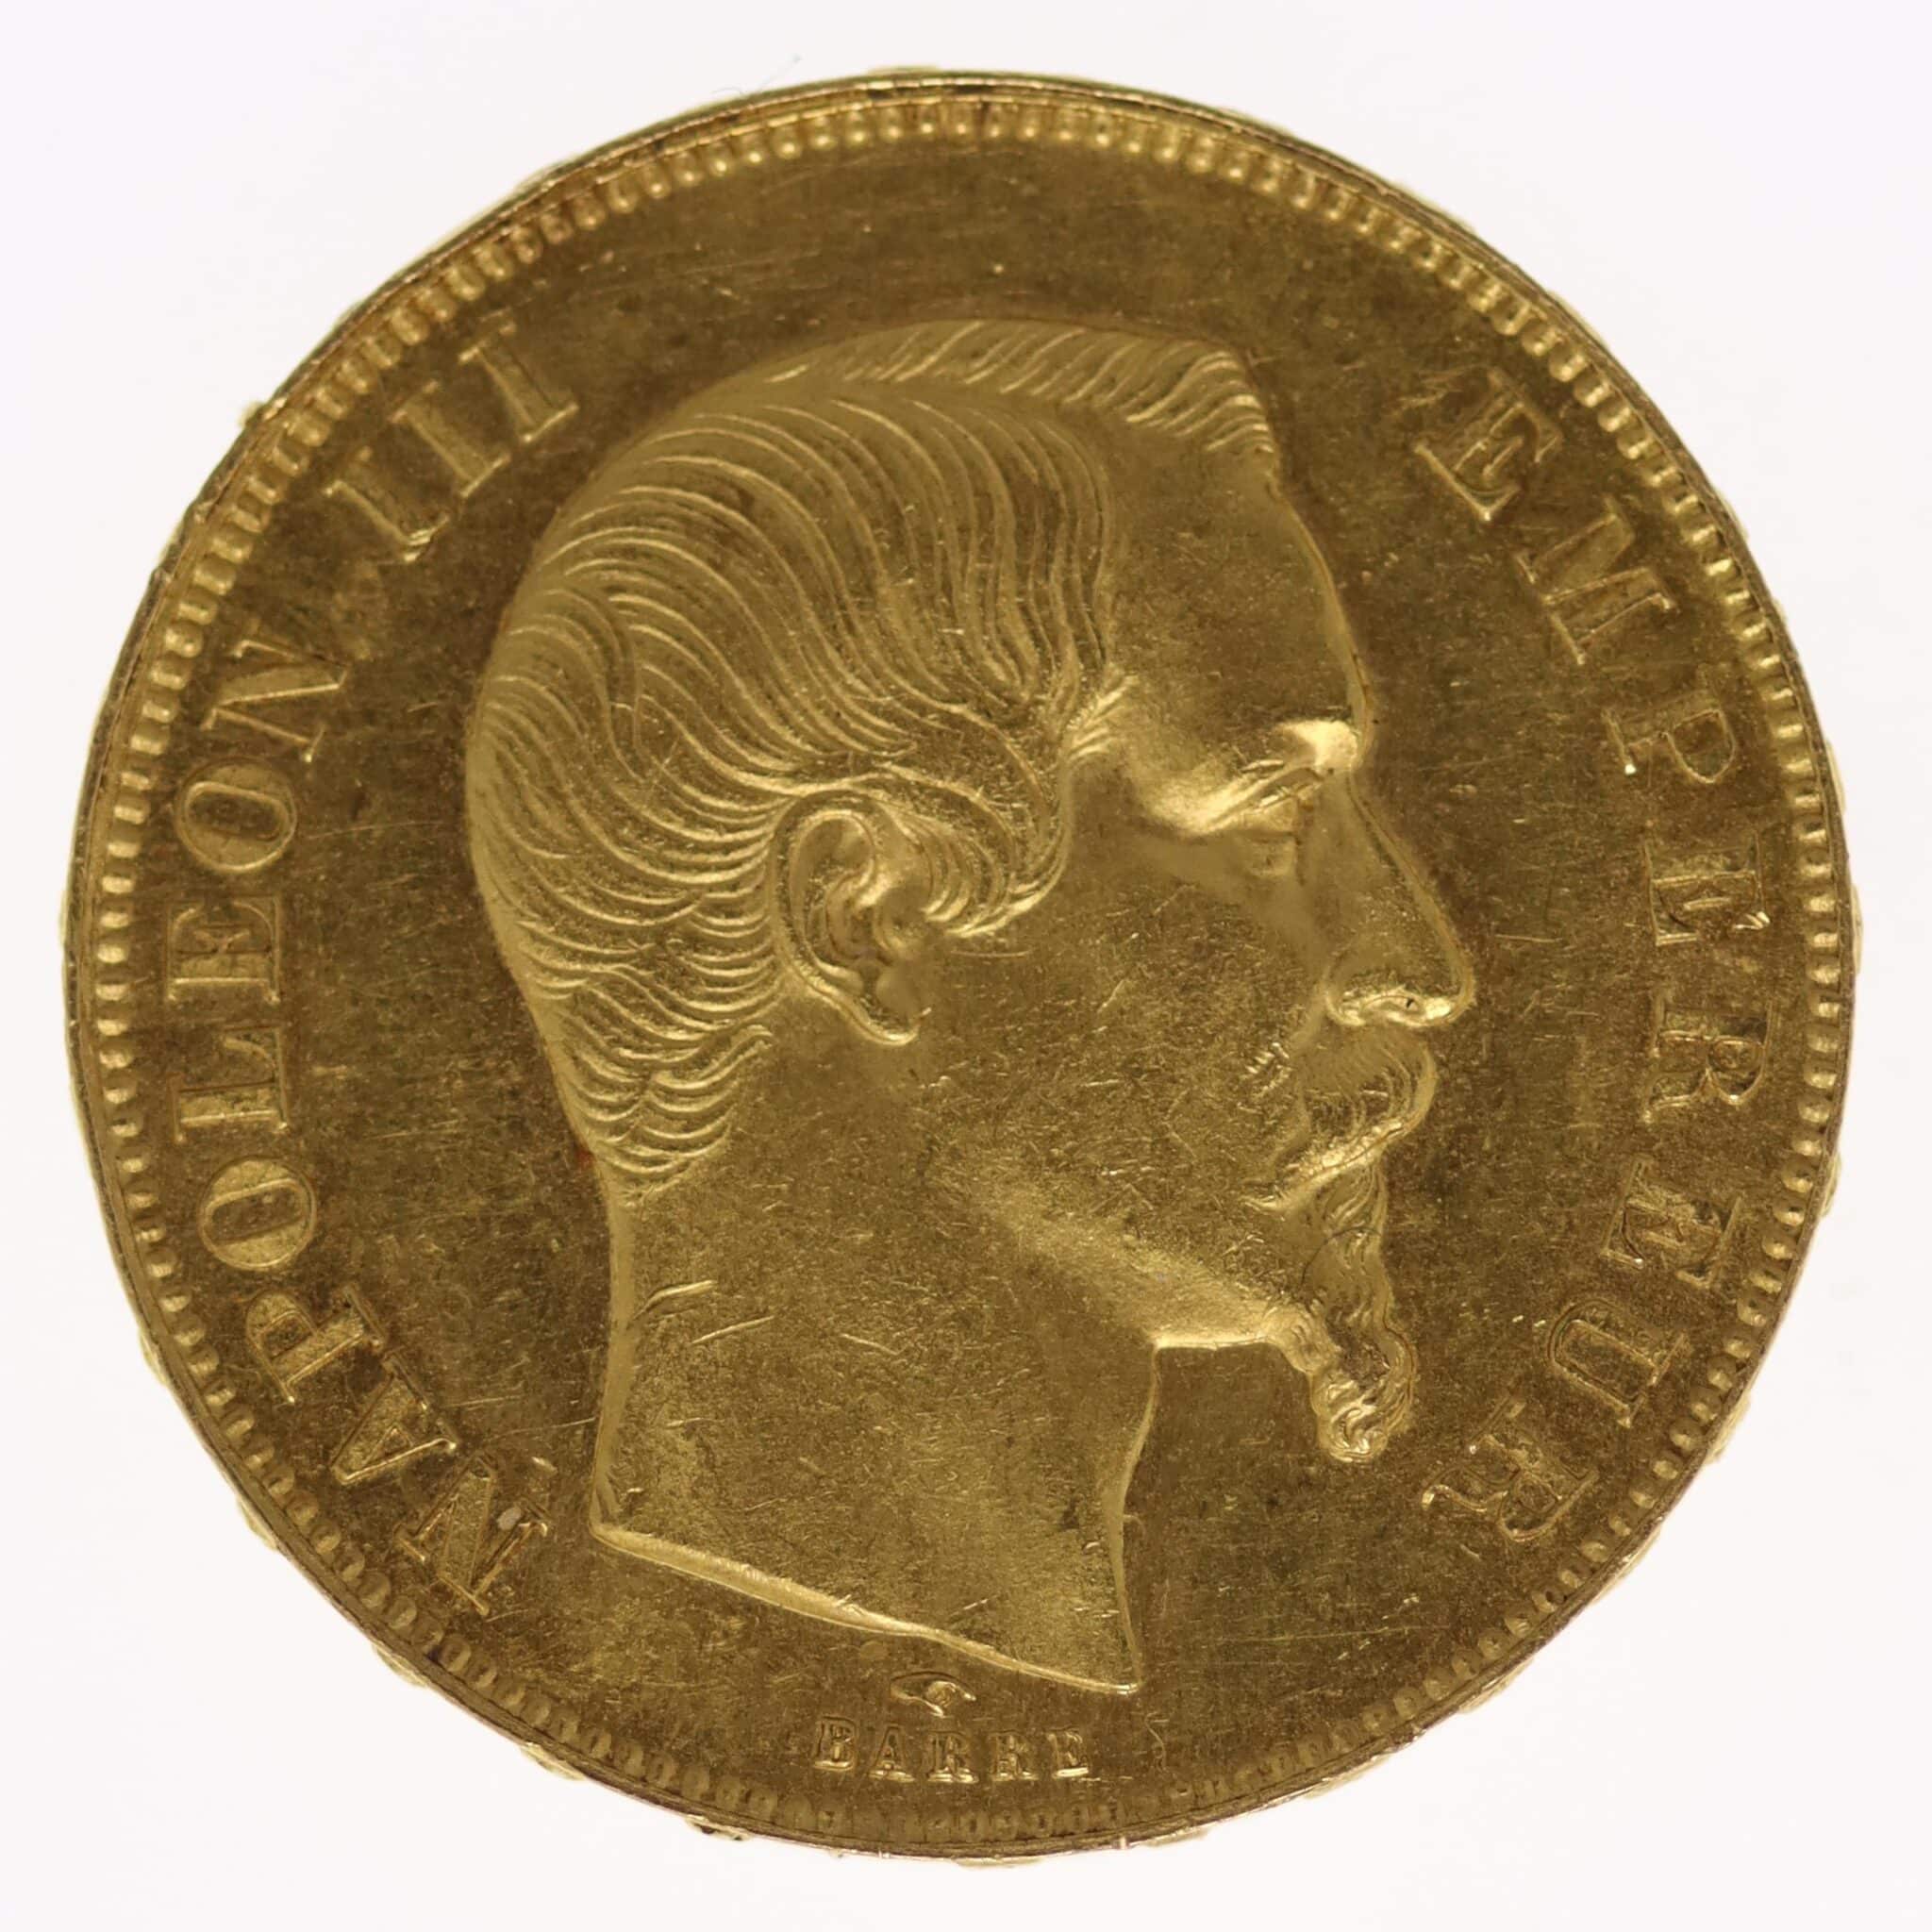 frankreich - Frankreich Napoleon III. 50 Francs 1858 A